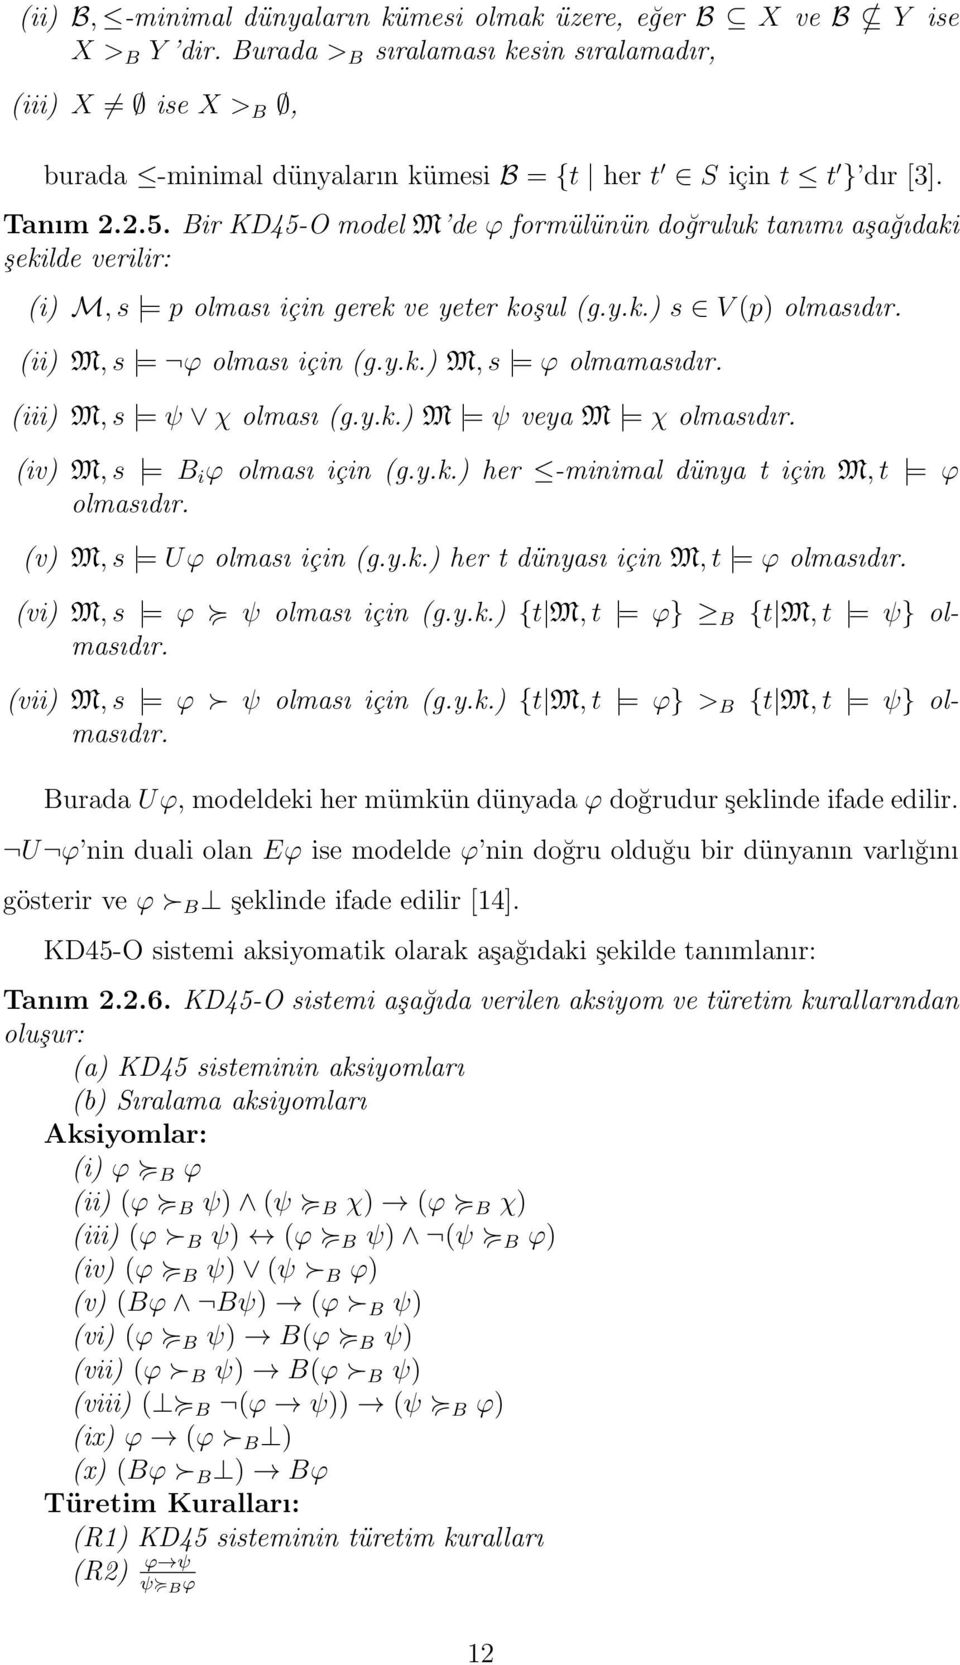 Bir KD45-O model M de ϕ formülünün doğruluk tanımı aşağıdaki şekilde verilir: (i) M, s = p olması için gerek ve yeter koşul (g.y.k.) s V (p) olmasıdır. (ii) M, s = ϕ olması için (g.y.k.) M, s = ϕ olmamasıdır.